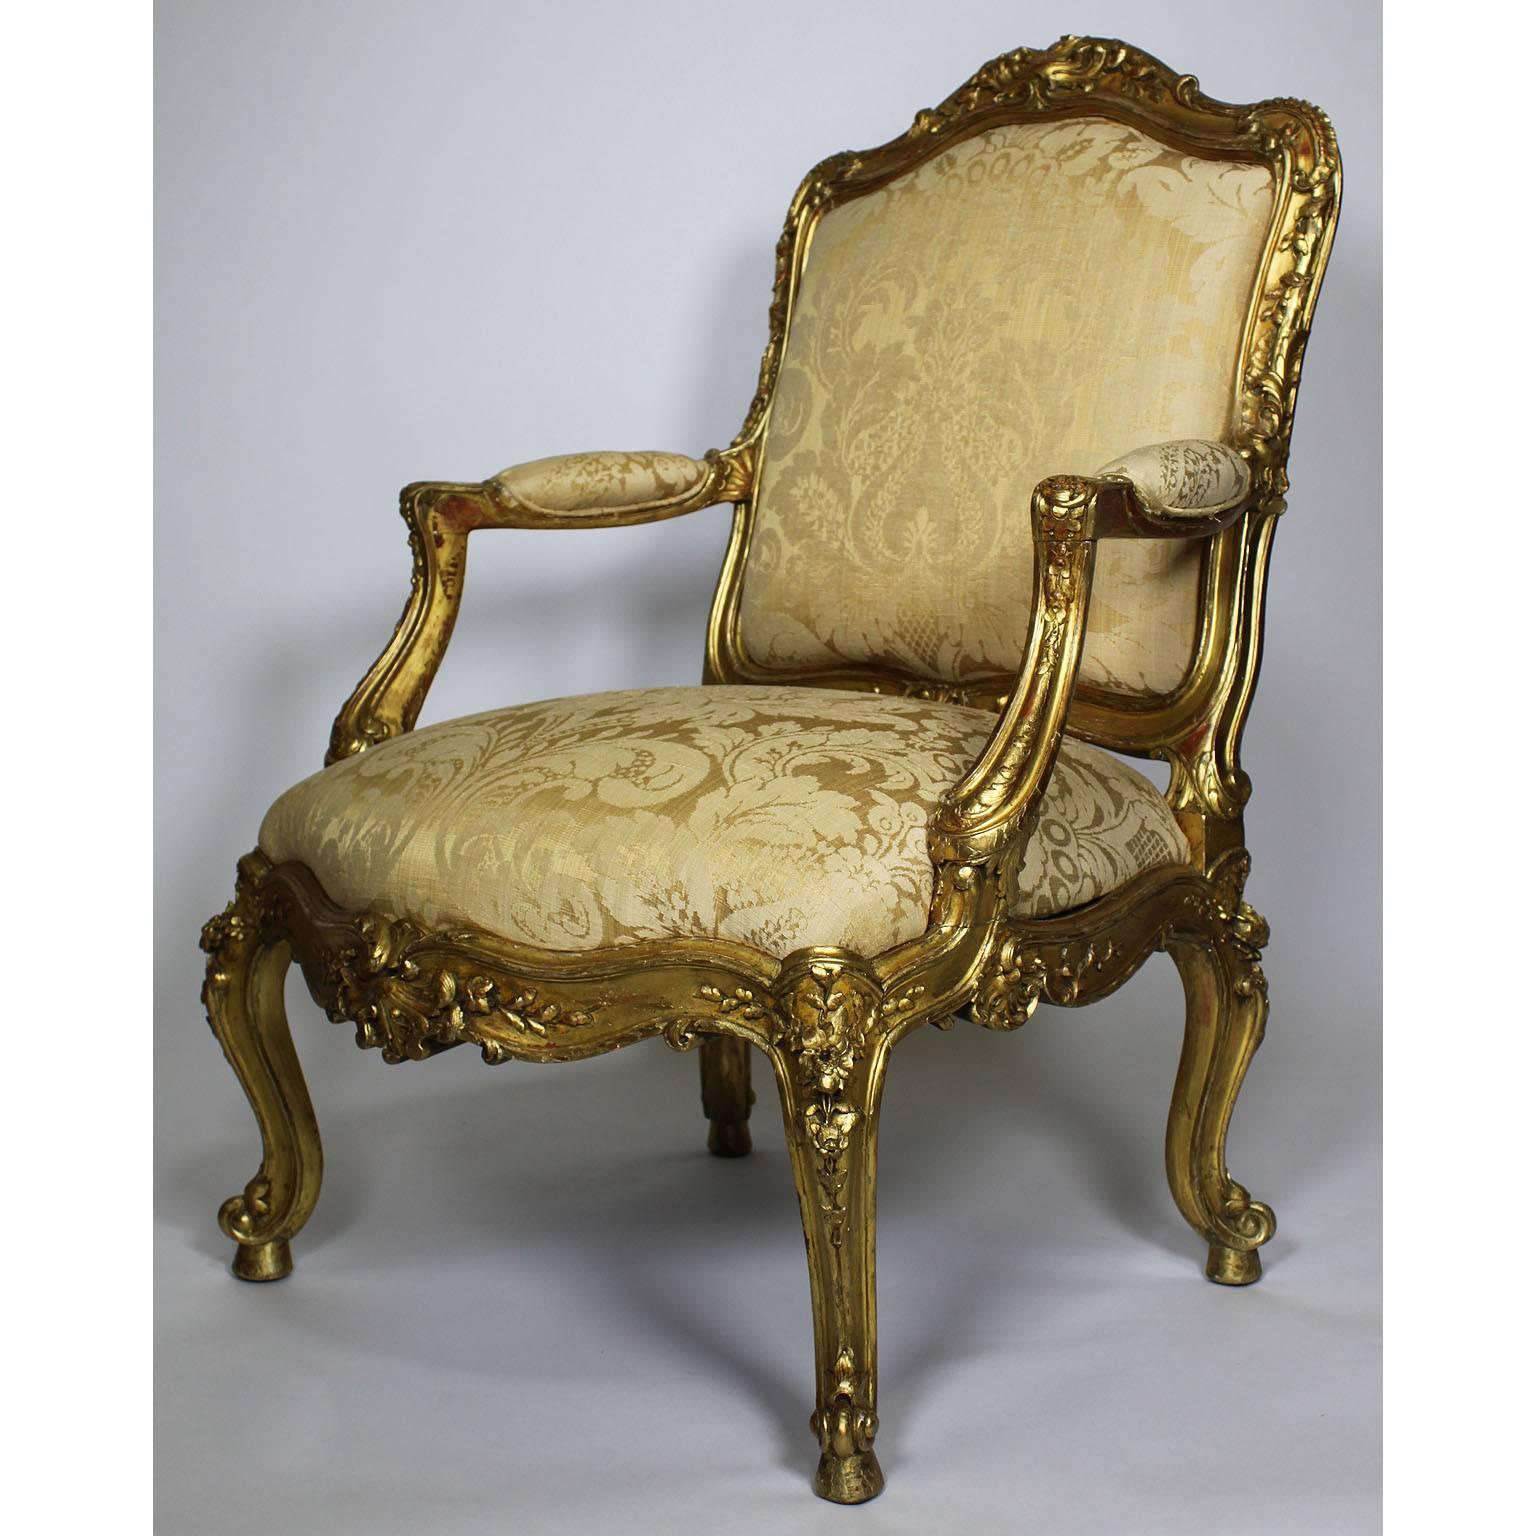 Ein feines Paar italienischer geschnitzter Sessel im Rokoko-Stil des 19. Jahrhunderts aus vergoldetem Holz; die gewölbten, gepolsterten, getäfelten Rückenlehnen mit blattartigen, gerollten Kämmen und ähnlichen Einfassungen, mit gepolsterten